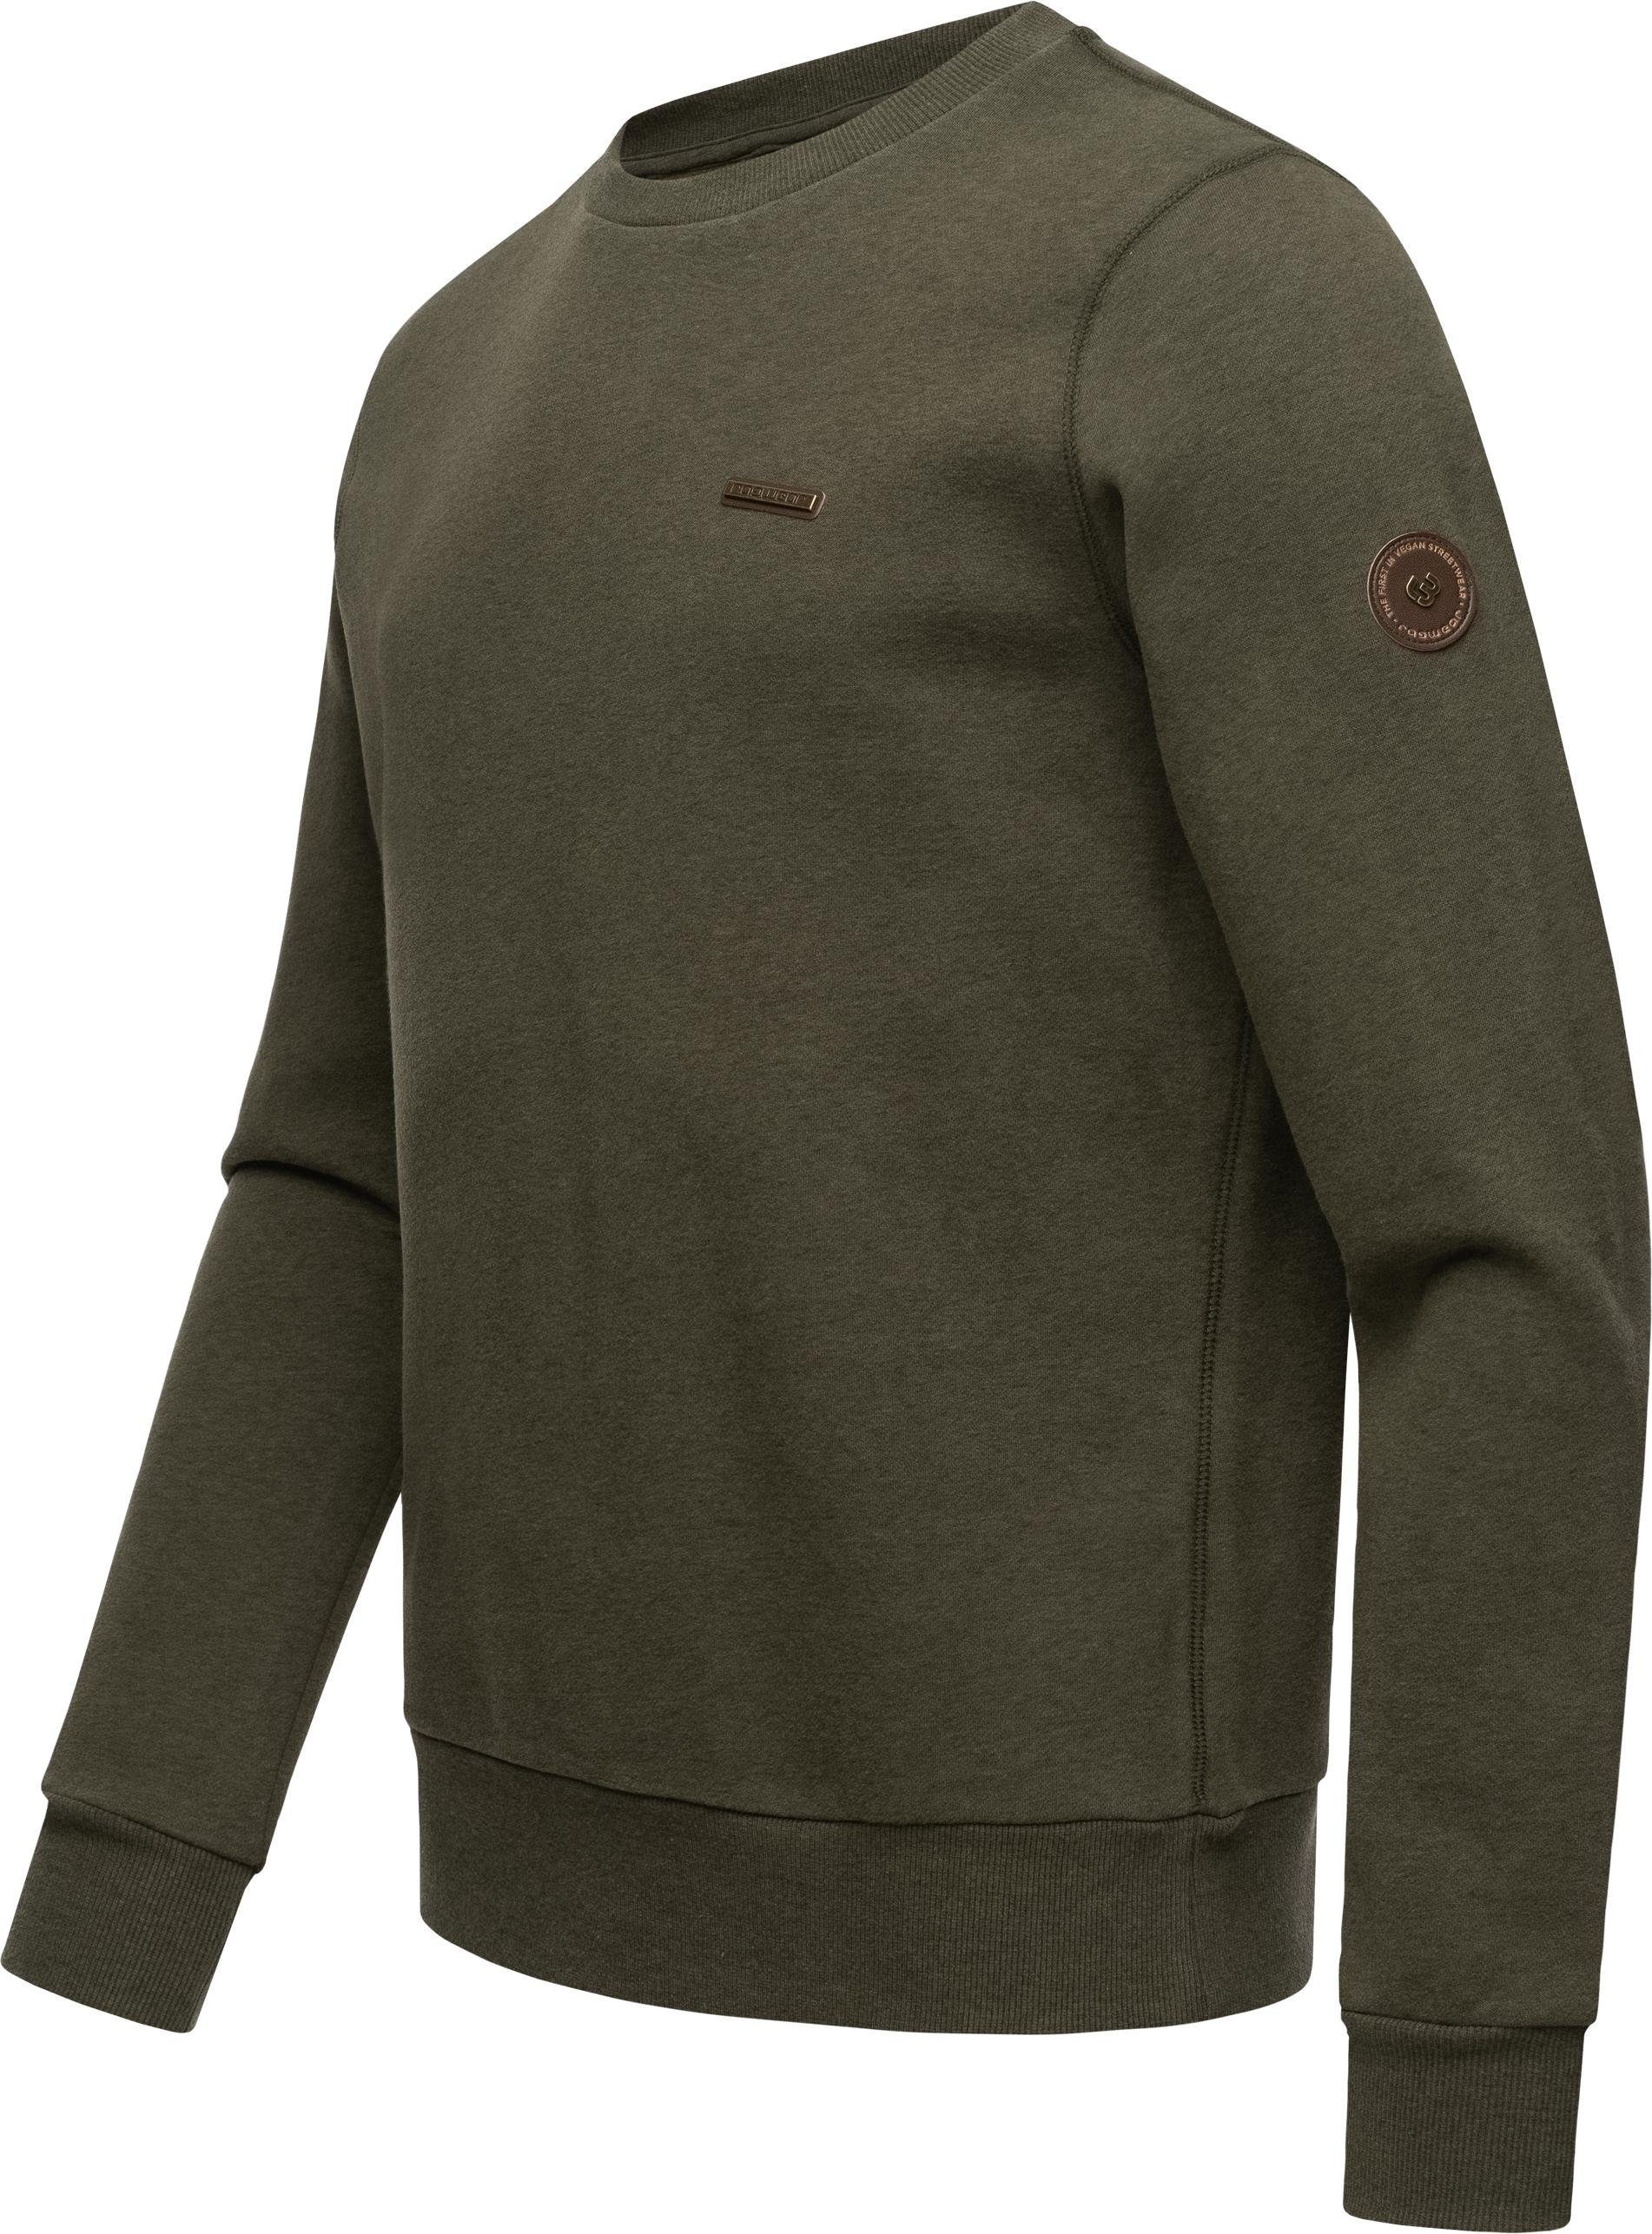 Cooler Pullover Basic Sweater Ragwear Indie olivgrün Herren